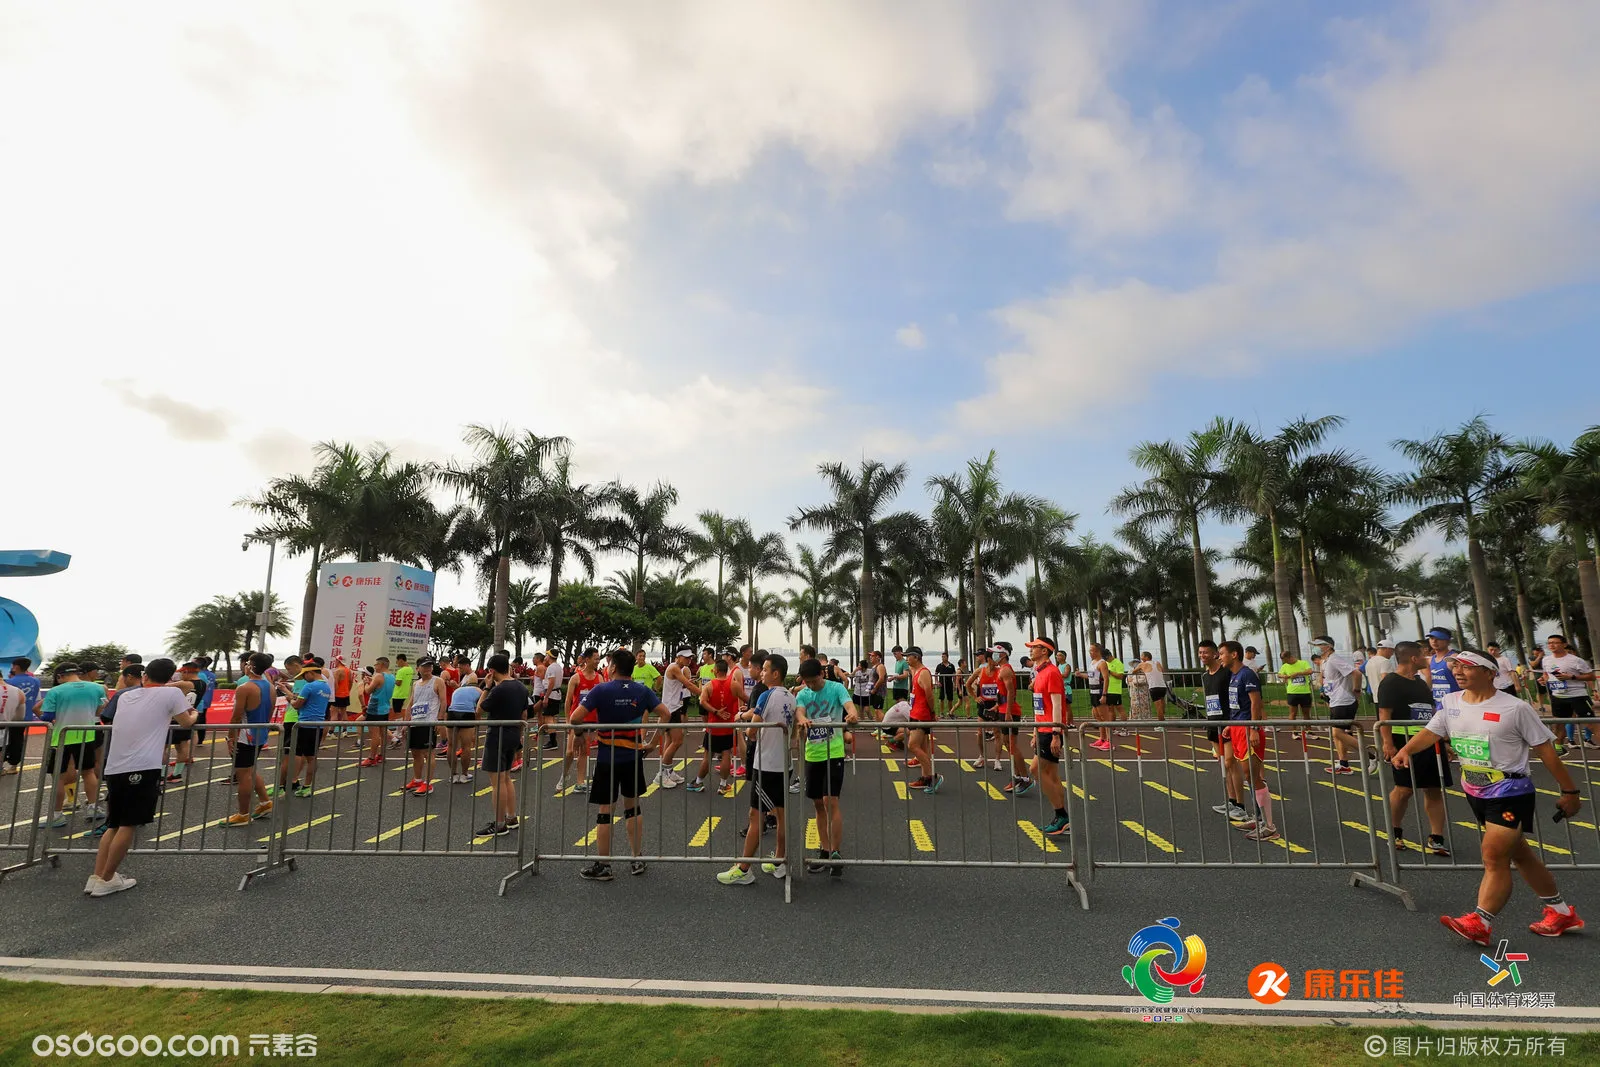 2022年厦门市全民健身运动会10公里跑比赛